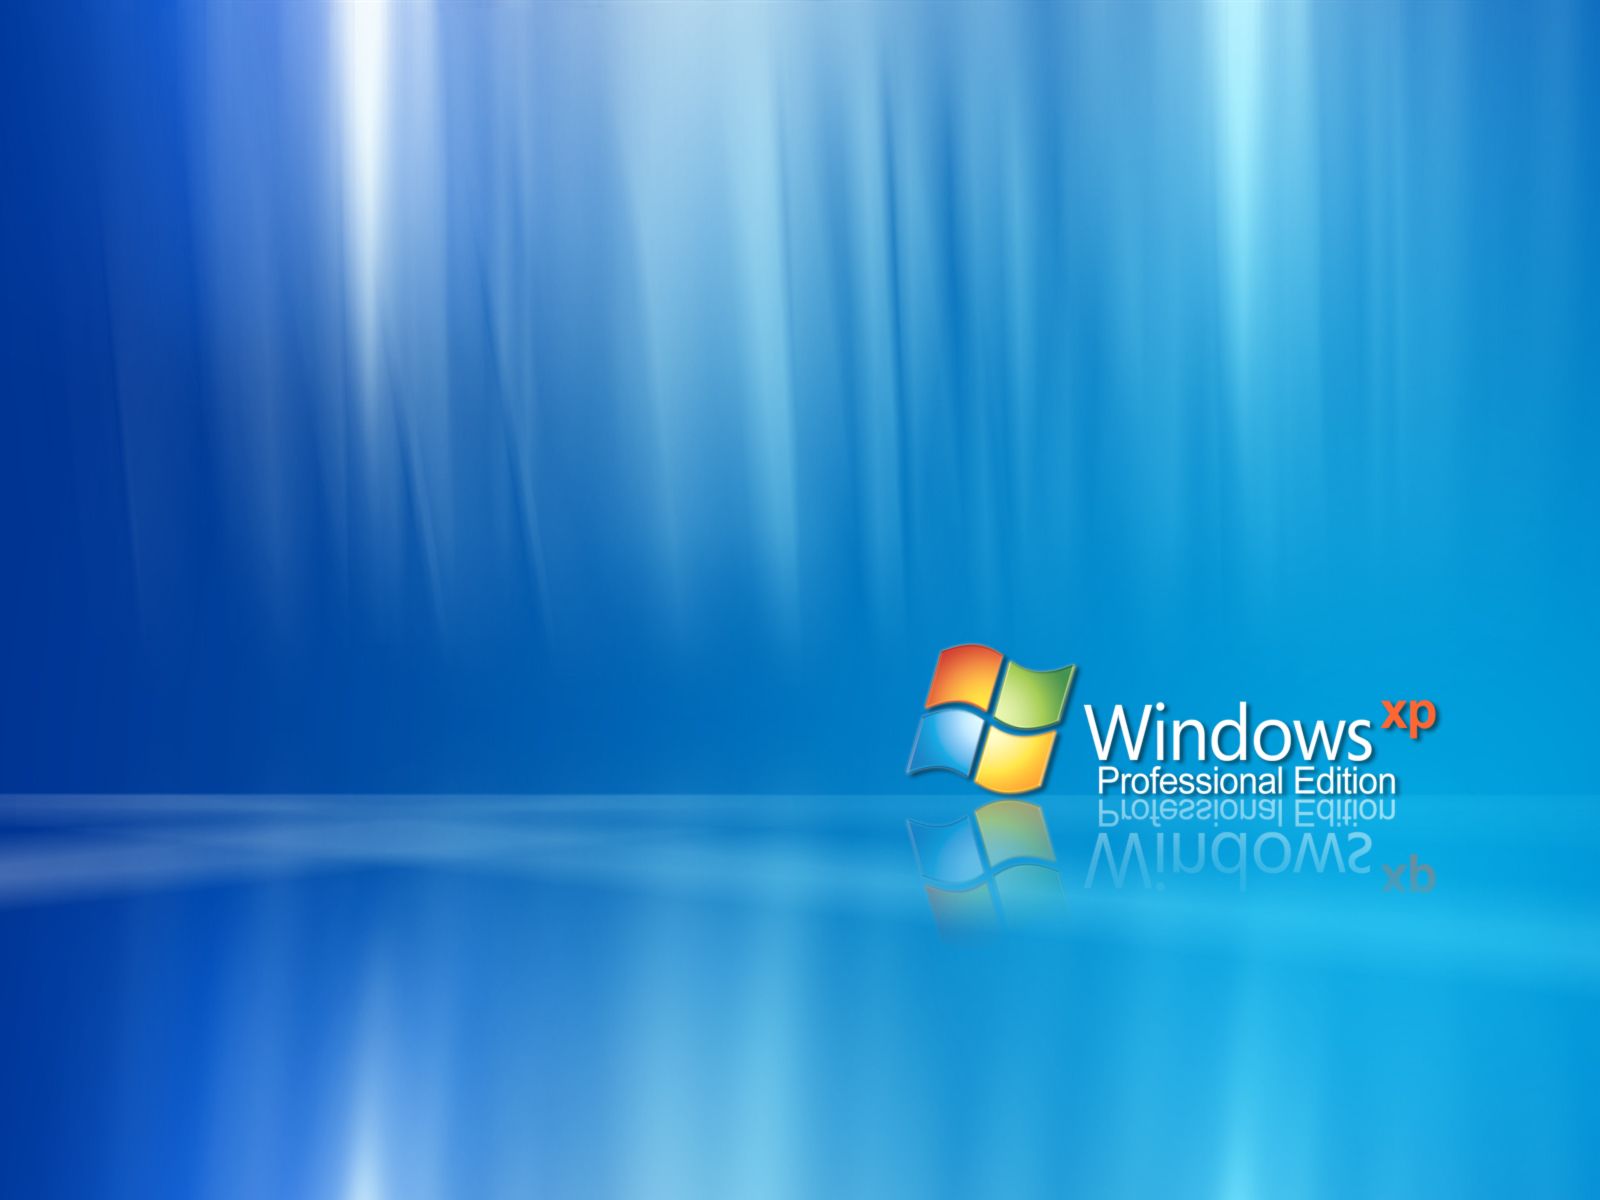 Download Desktop Background For Windows Xp 6